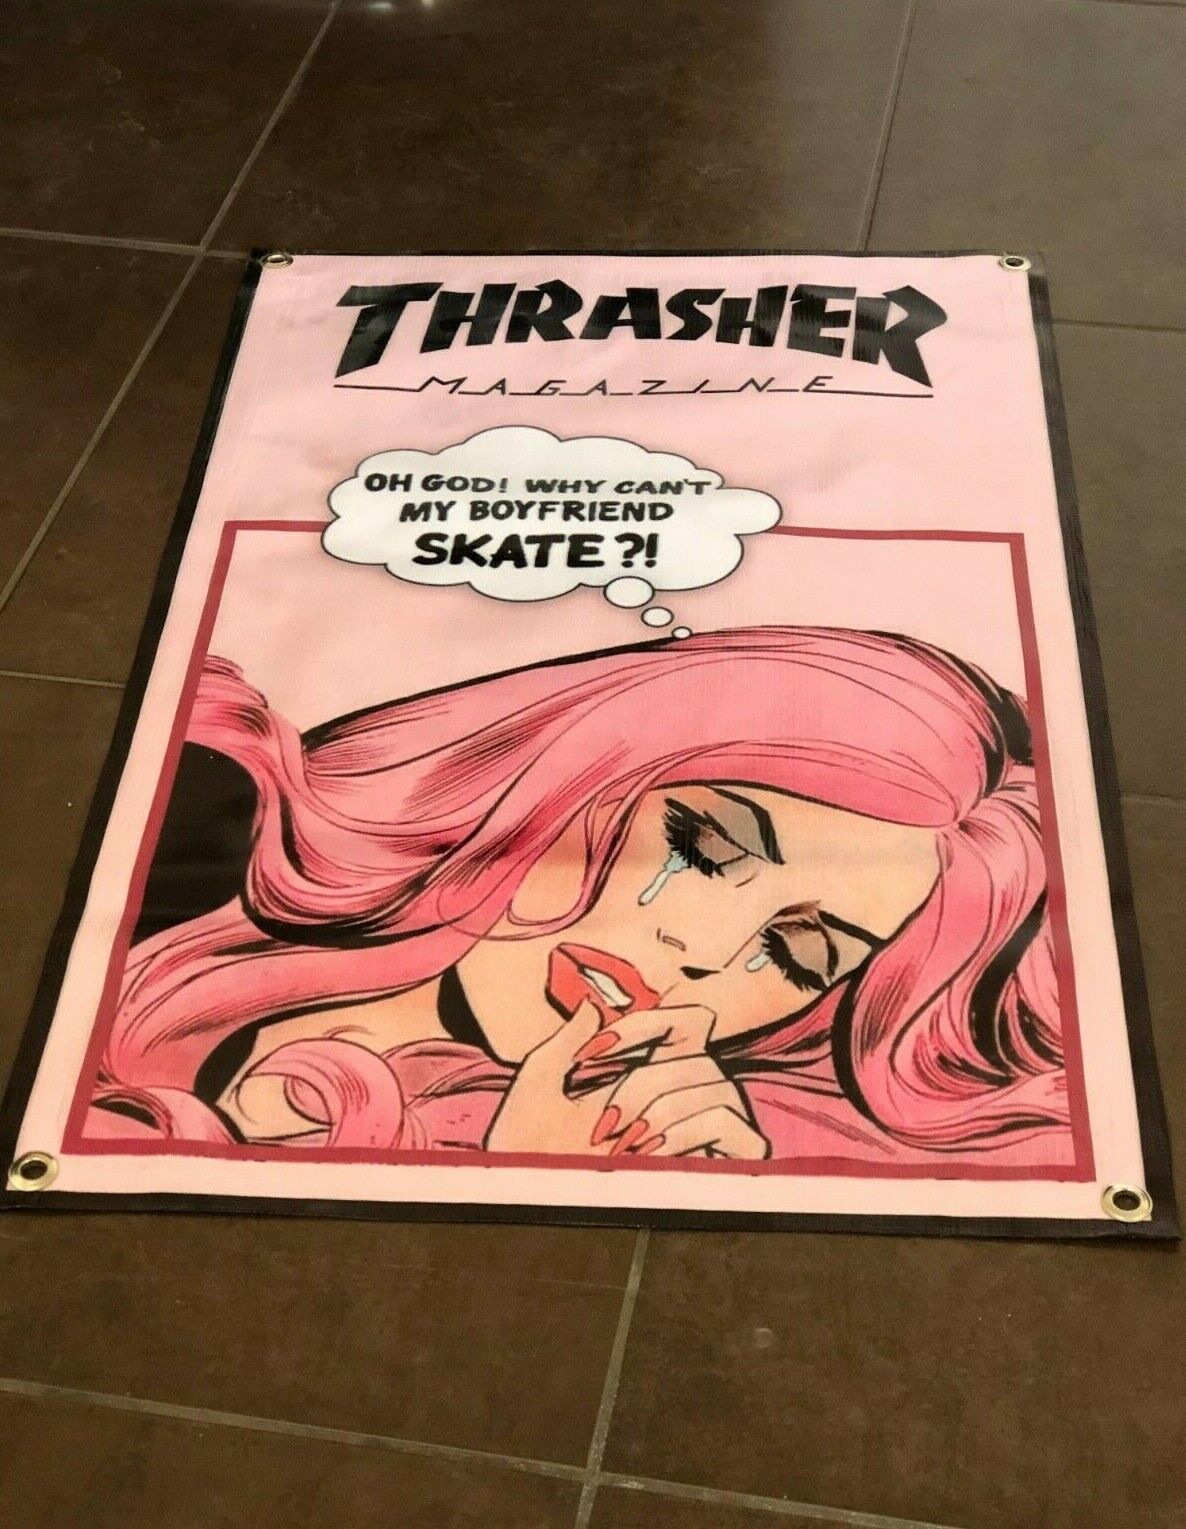 Thrasher Magazine Girl Skateboard surf cap top banner poster 